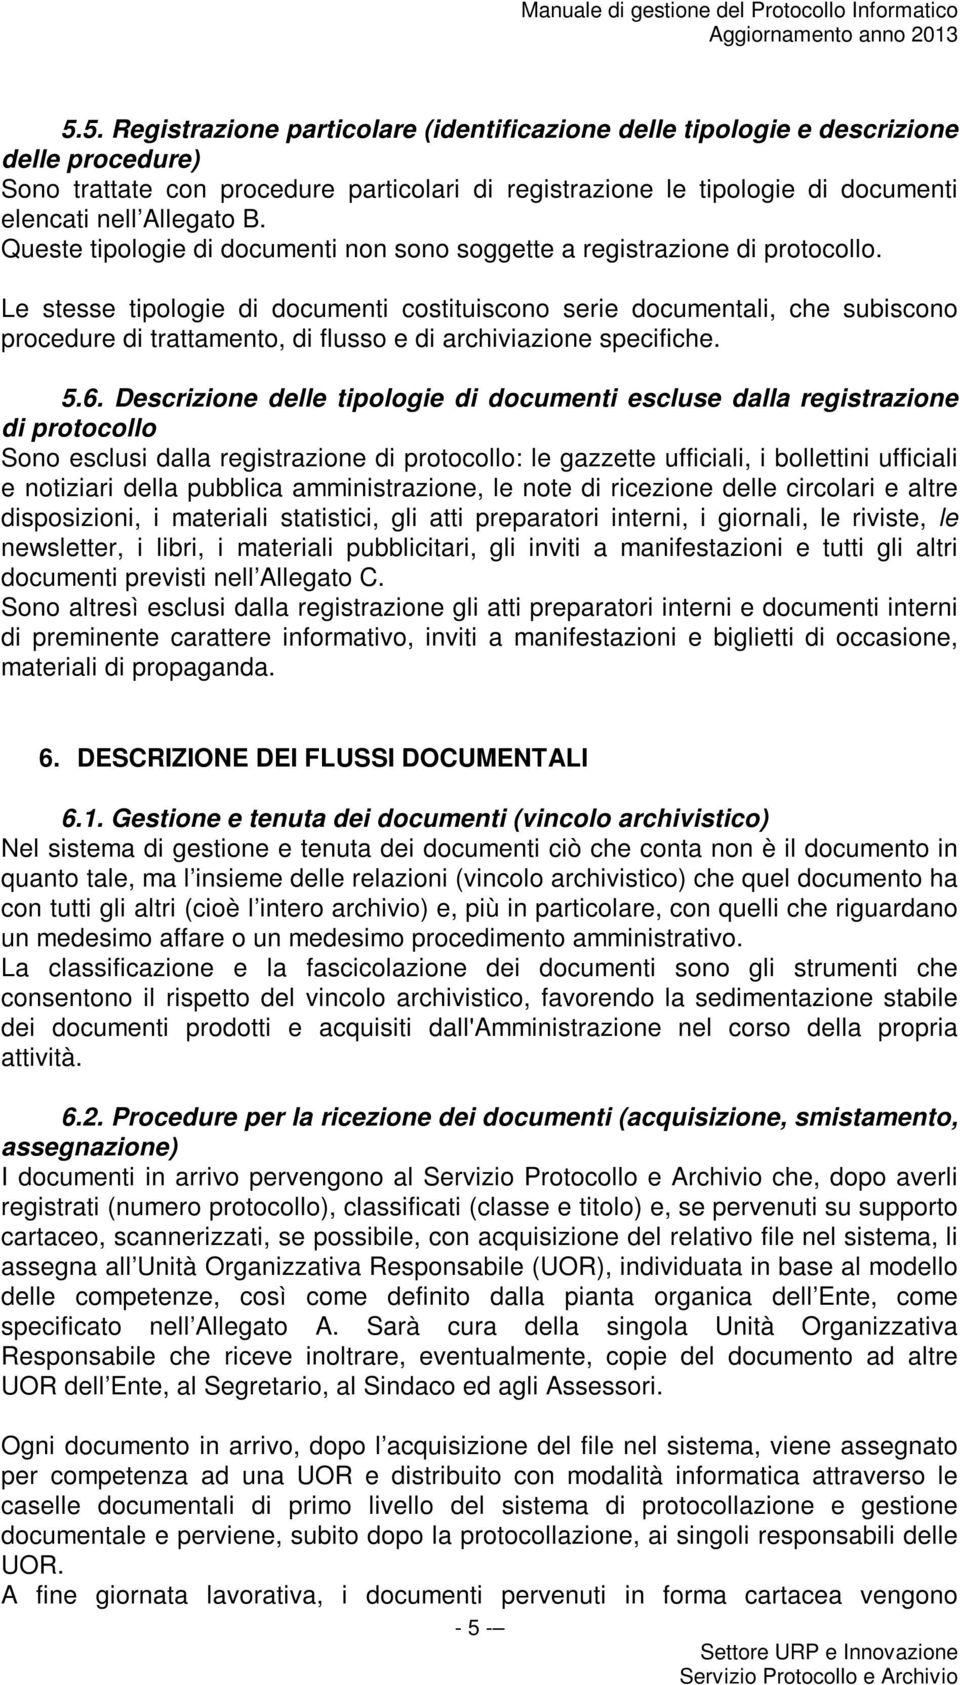 B. Queste tipologie di documenti non sono soggette a registrazione di protocollo.